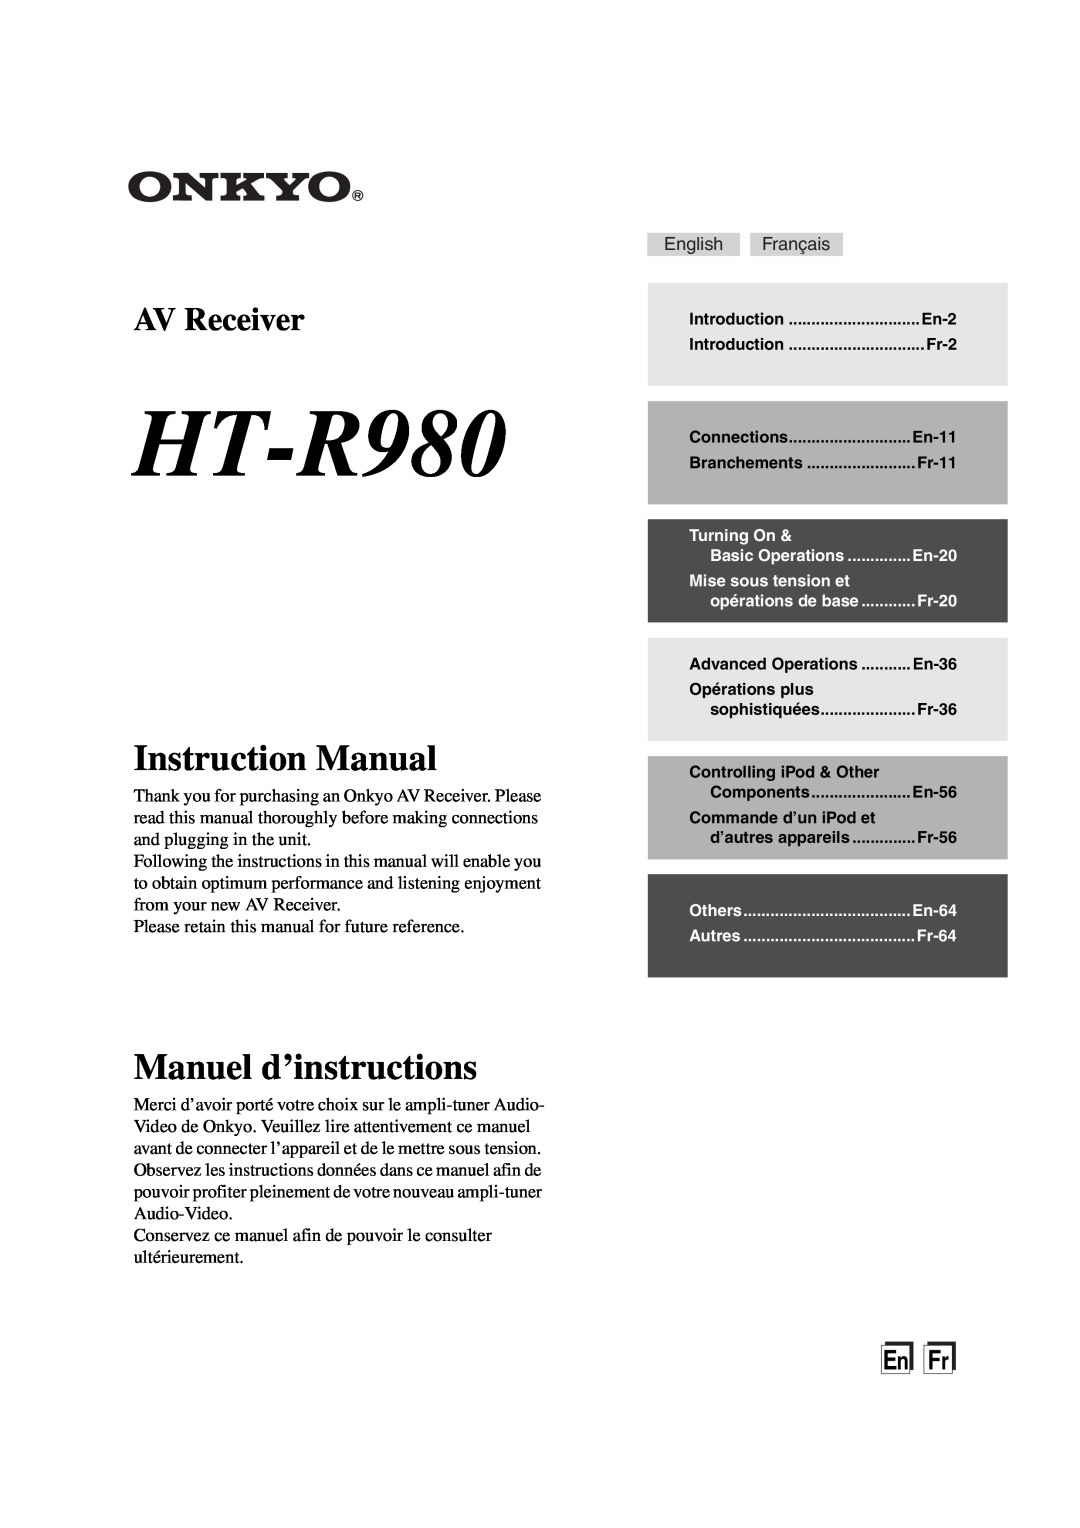 Onkyo HT-R980 instruction manual Instruction Manual, Manuel d’instructions, AV Receiver, EnFr 